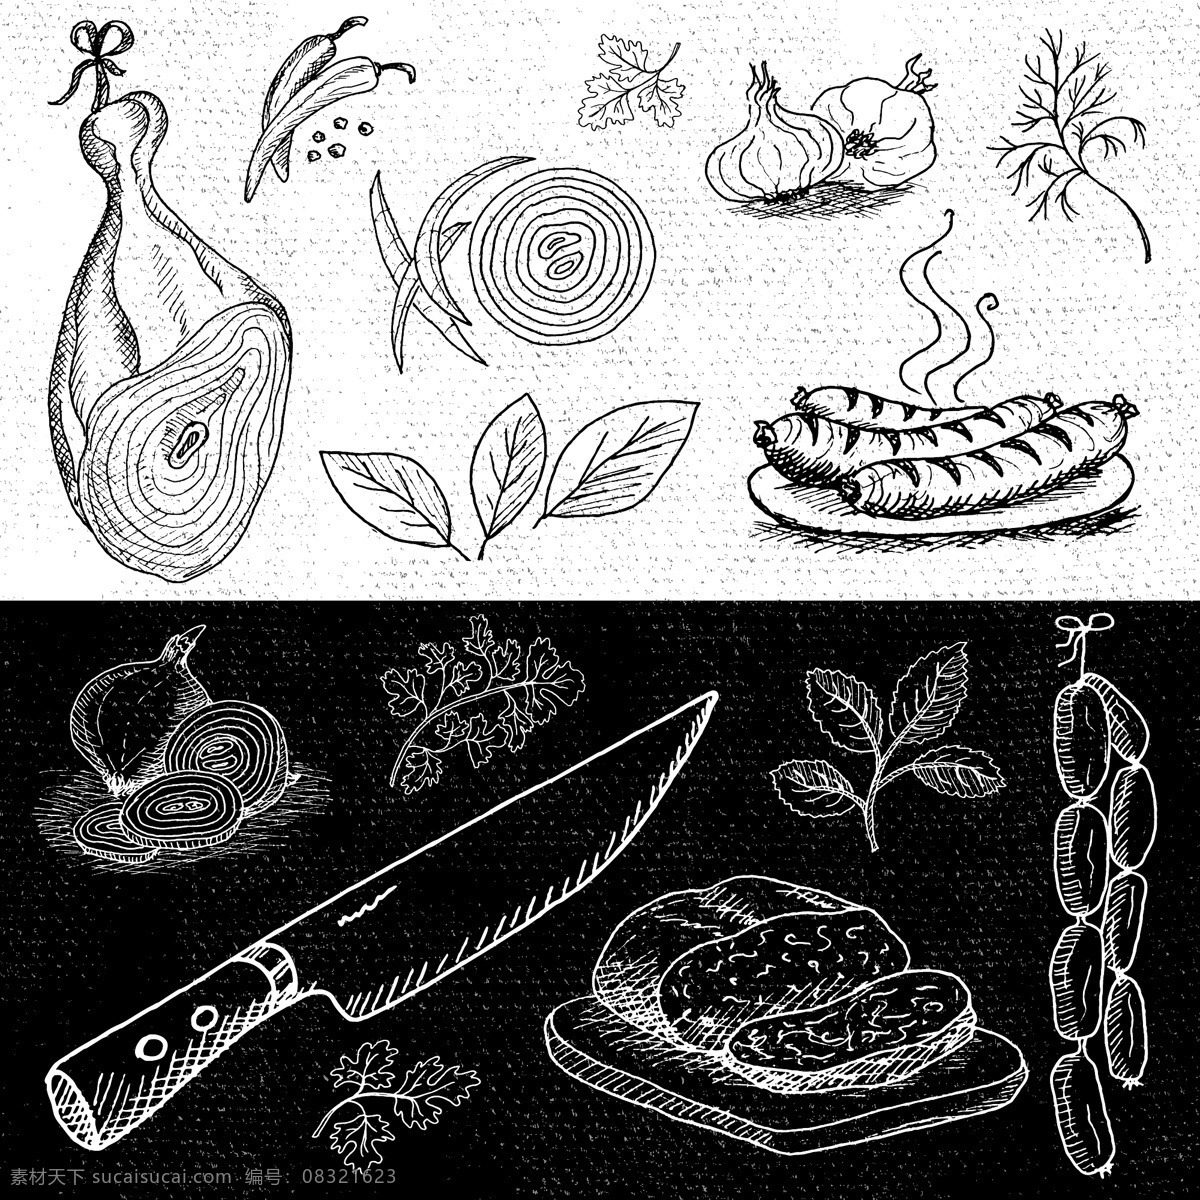 鸡腿 香肠 烹饪 饮食 矢量 合集 水果刀 黑板 手绘 英文 插画 线条 卡通 水果 蔬菜